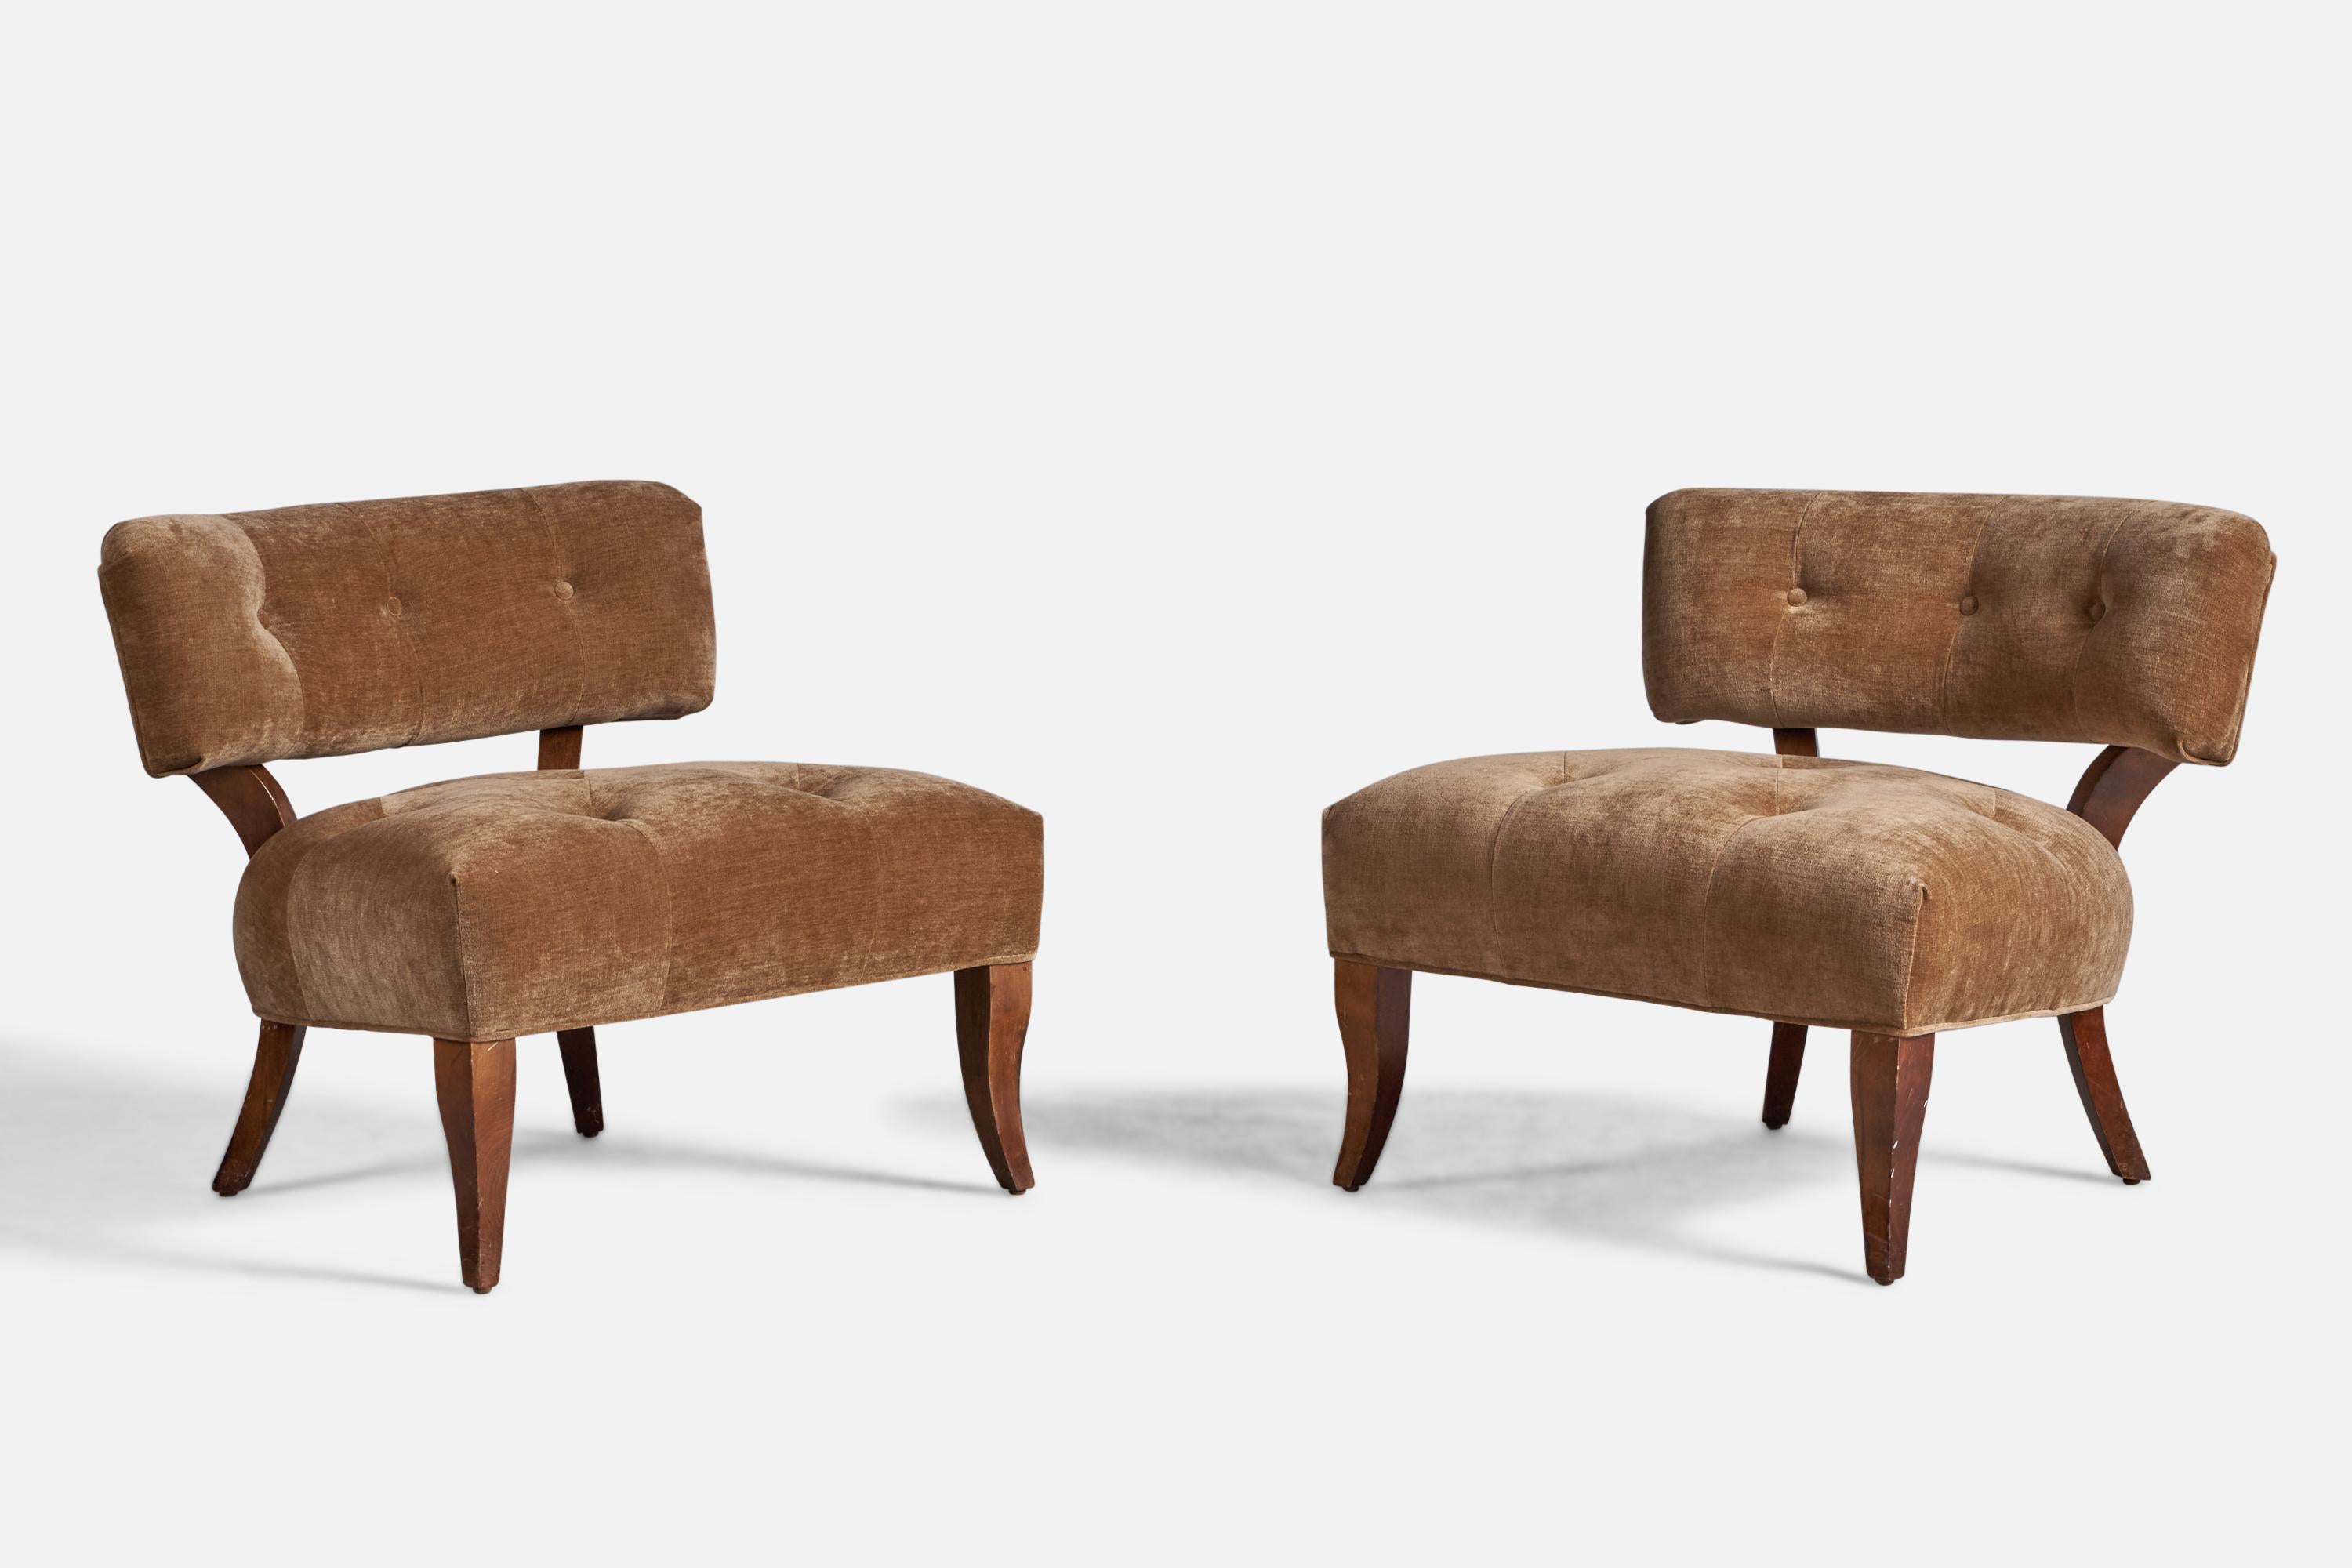 Paire de fauteuils pantoufles en bois et tissu beige attribués à Billy Haines, USA, c.C.

Hauteur d'assise de 17 pouces